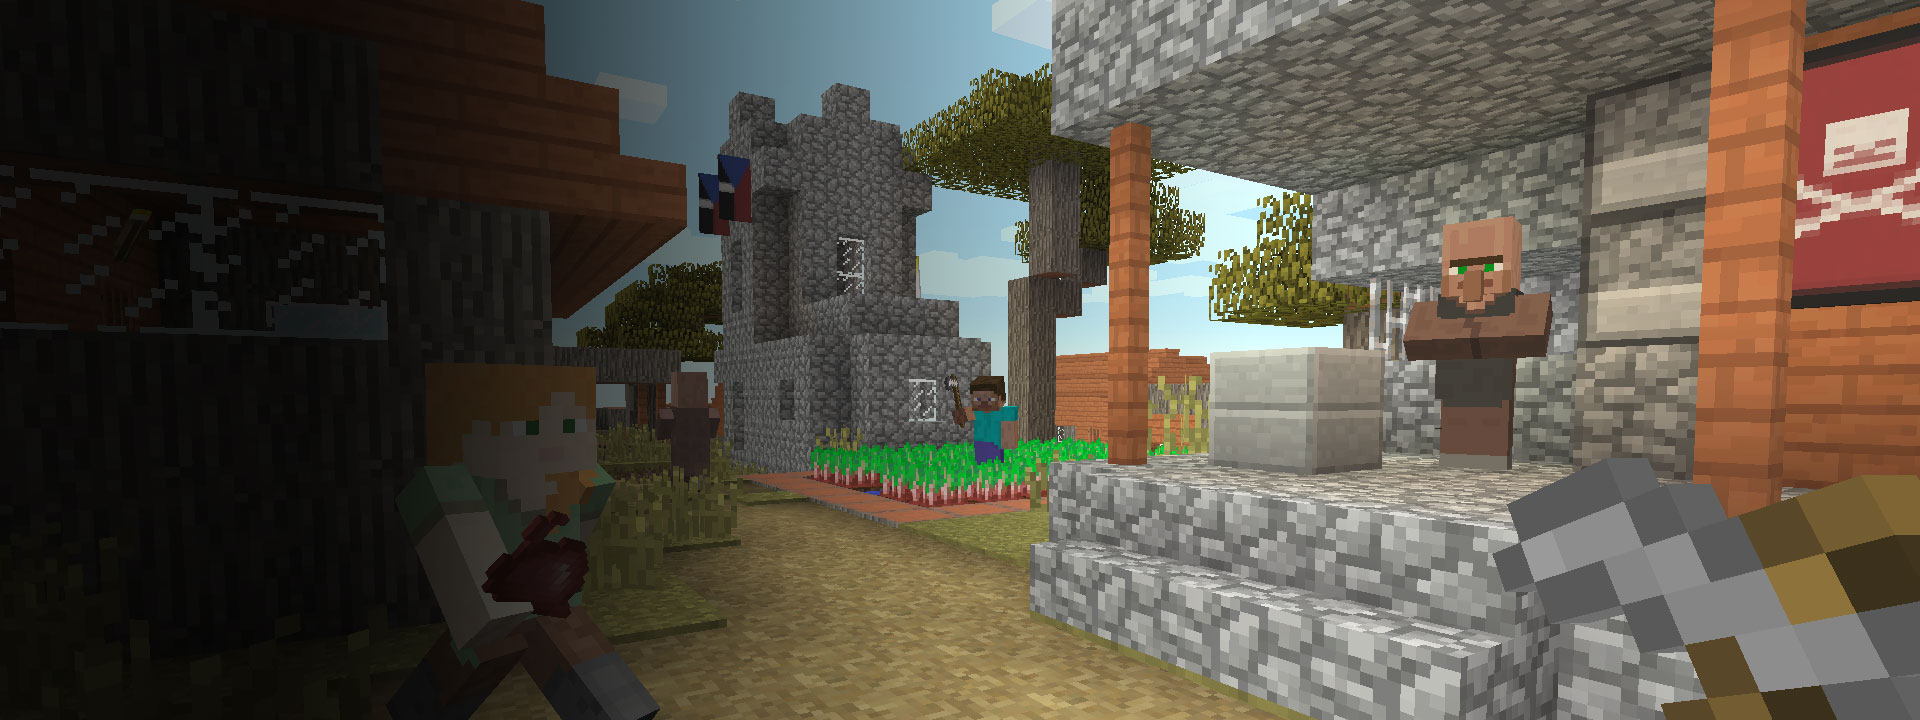 Meerdere huizen met Minecraft-personages die op de voorgrond lopen.